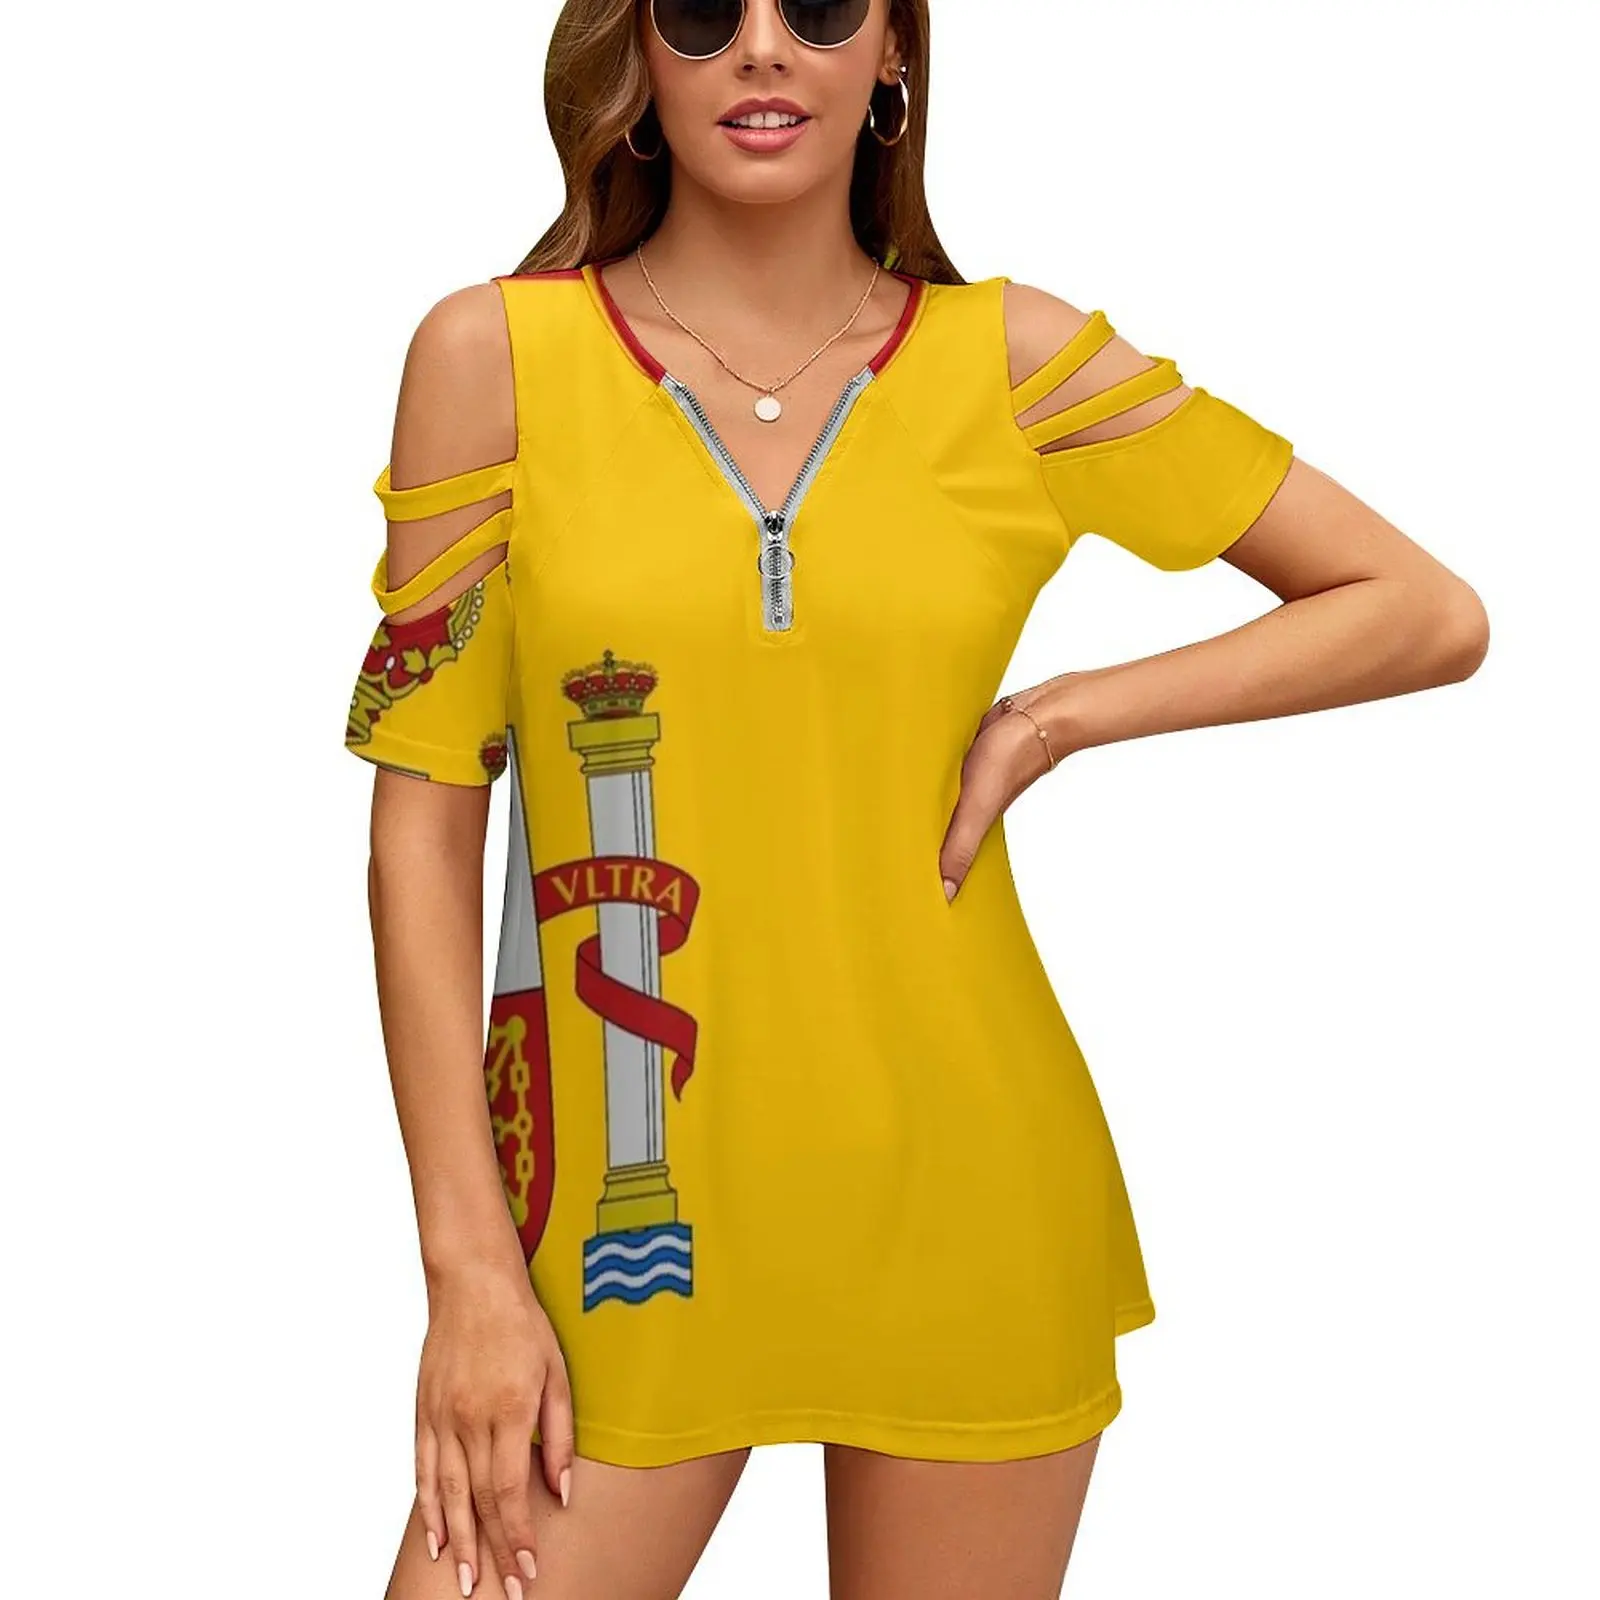 

Женский топ с открытыми плечами, рубашка с коротким рукавом и молнией, флаг Испании, испании